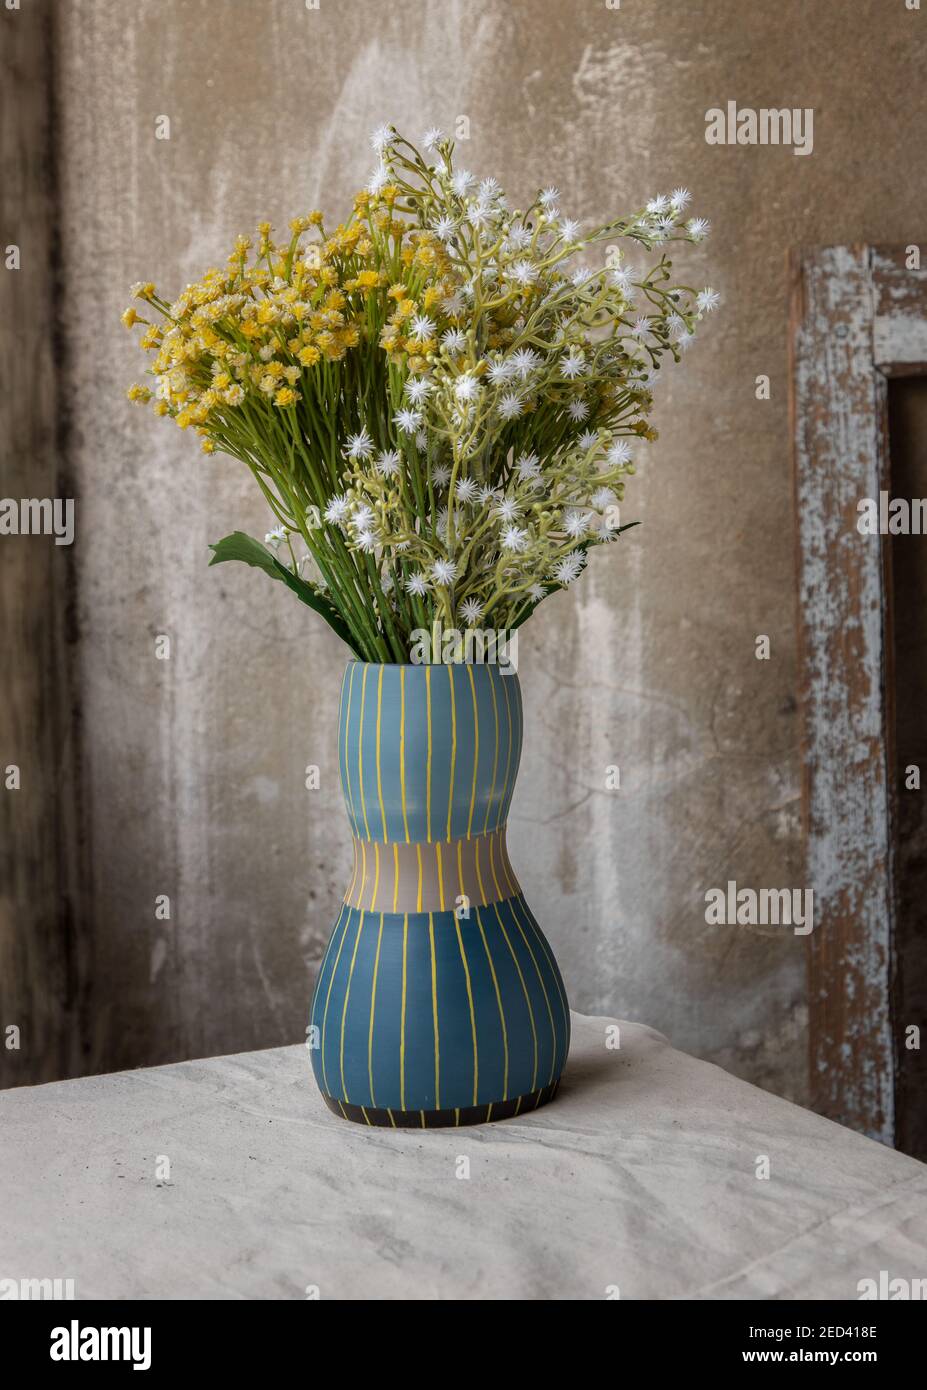 Bouquet de fleurs vertes et blanches en vase céramique bleu fait main sur  toile blanche texturée avec vieux mur de ciment à la maison de balcon.  Décoration d'intérieur Photo Stock - Alamy